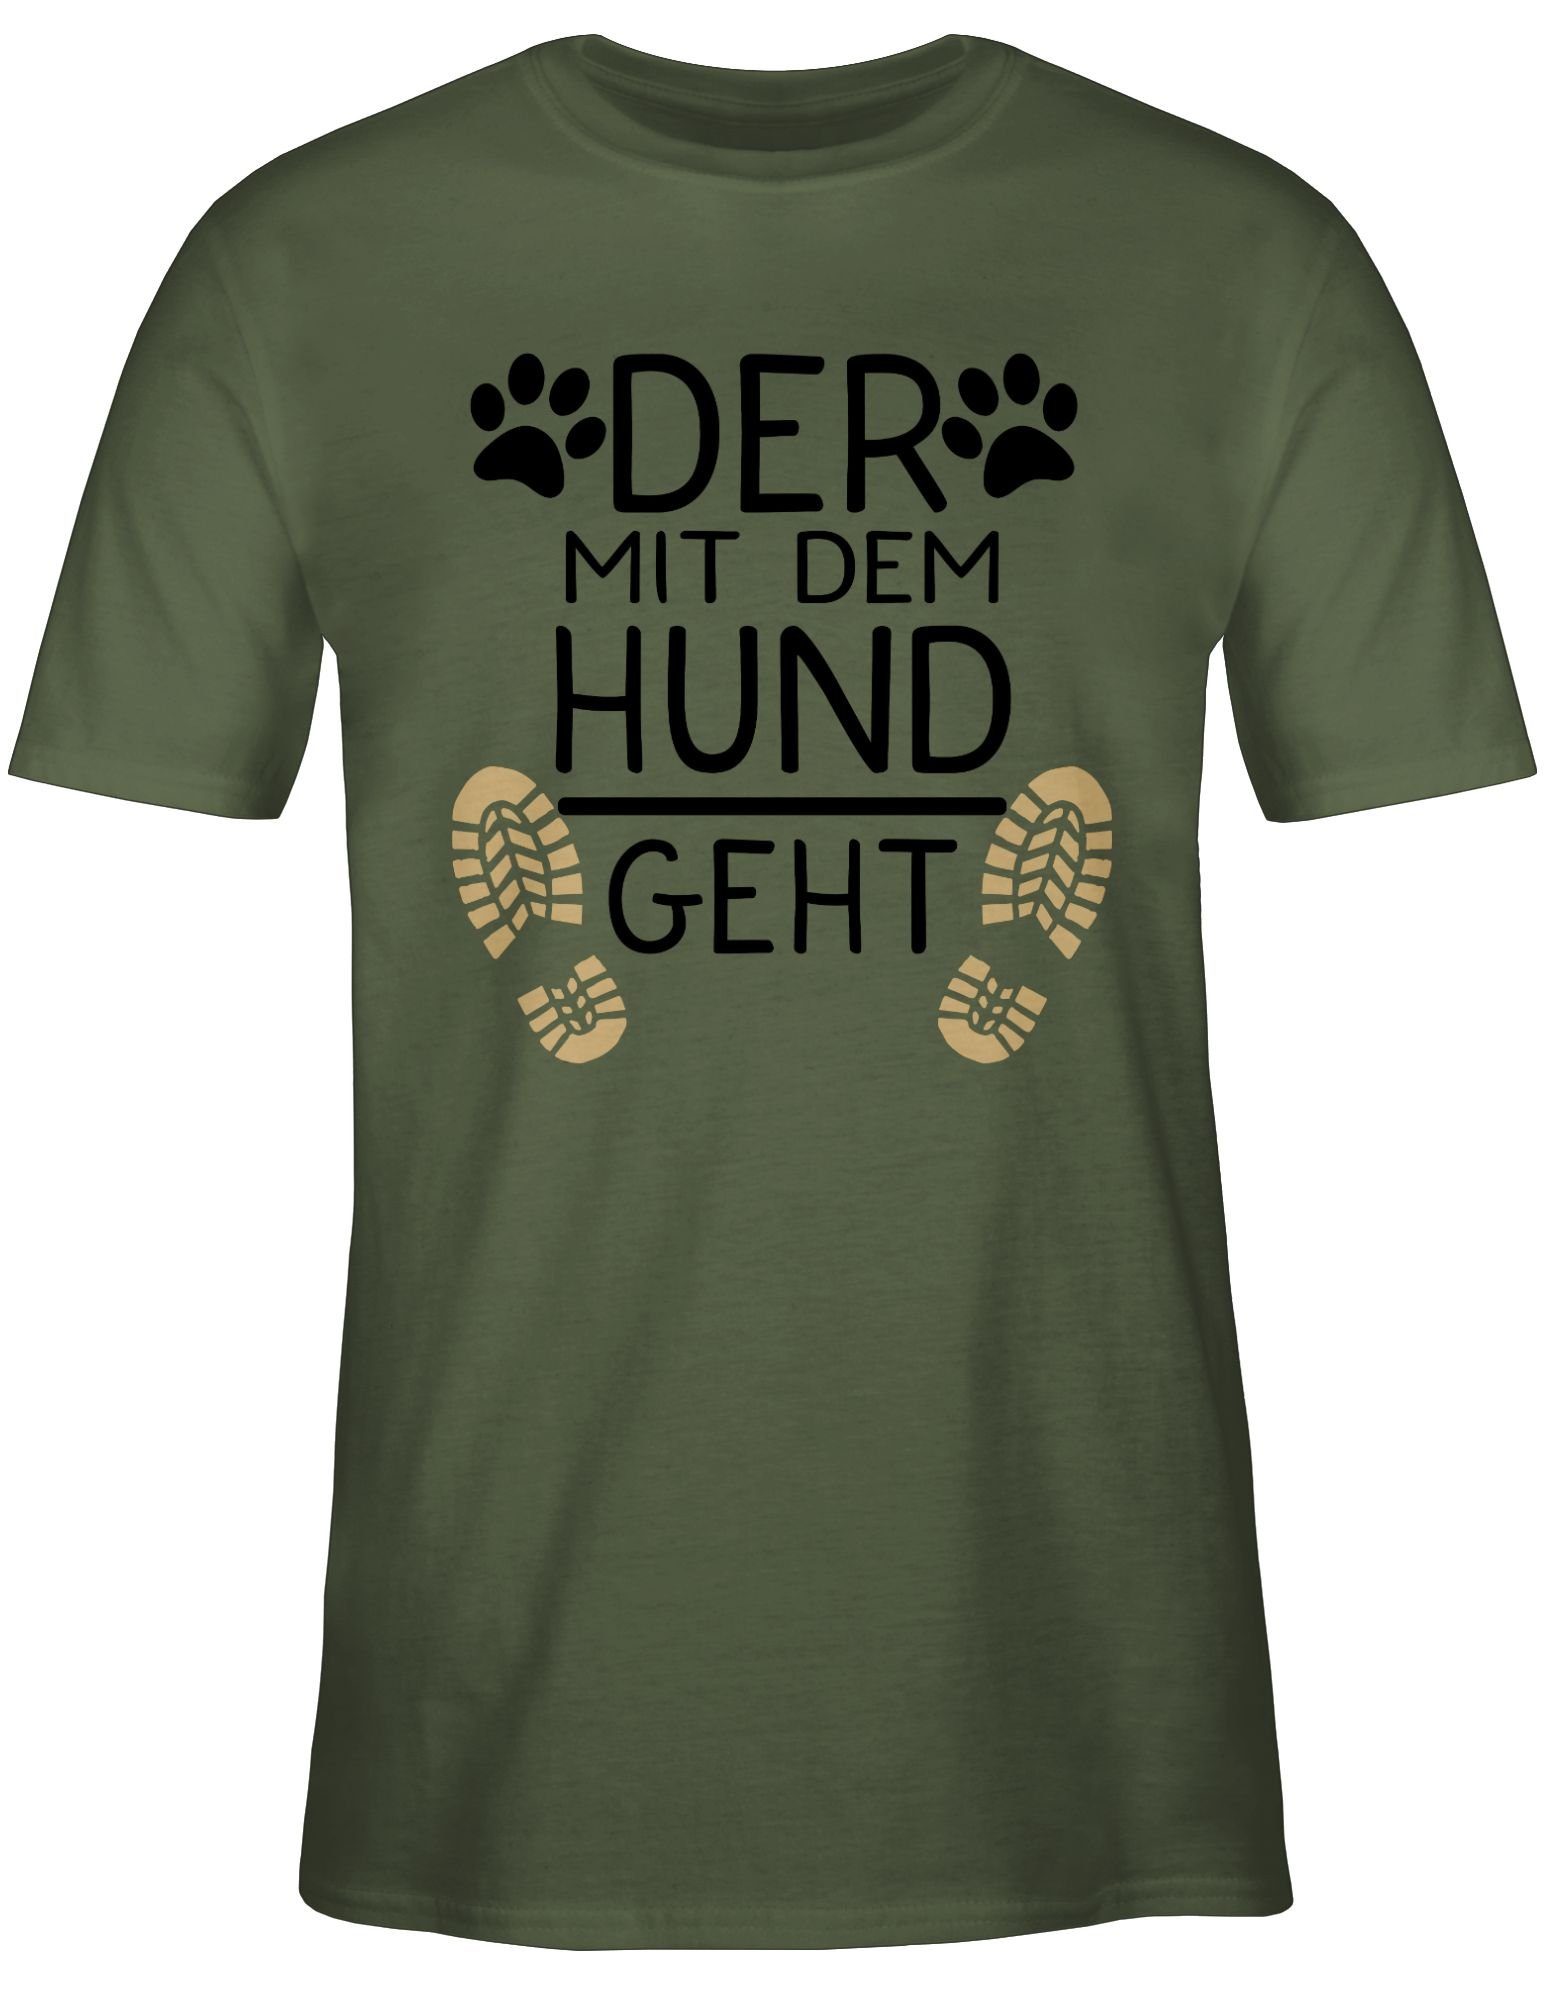 Shirtracer T-Shirt Der mit dem Hund 02 Grün schwarz für Hundebesitzer geht Geschenk - Army